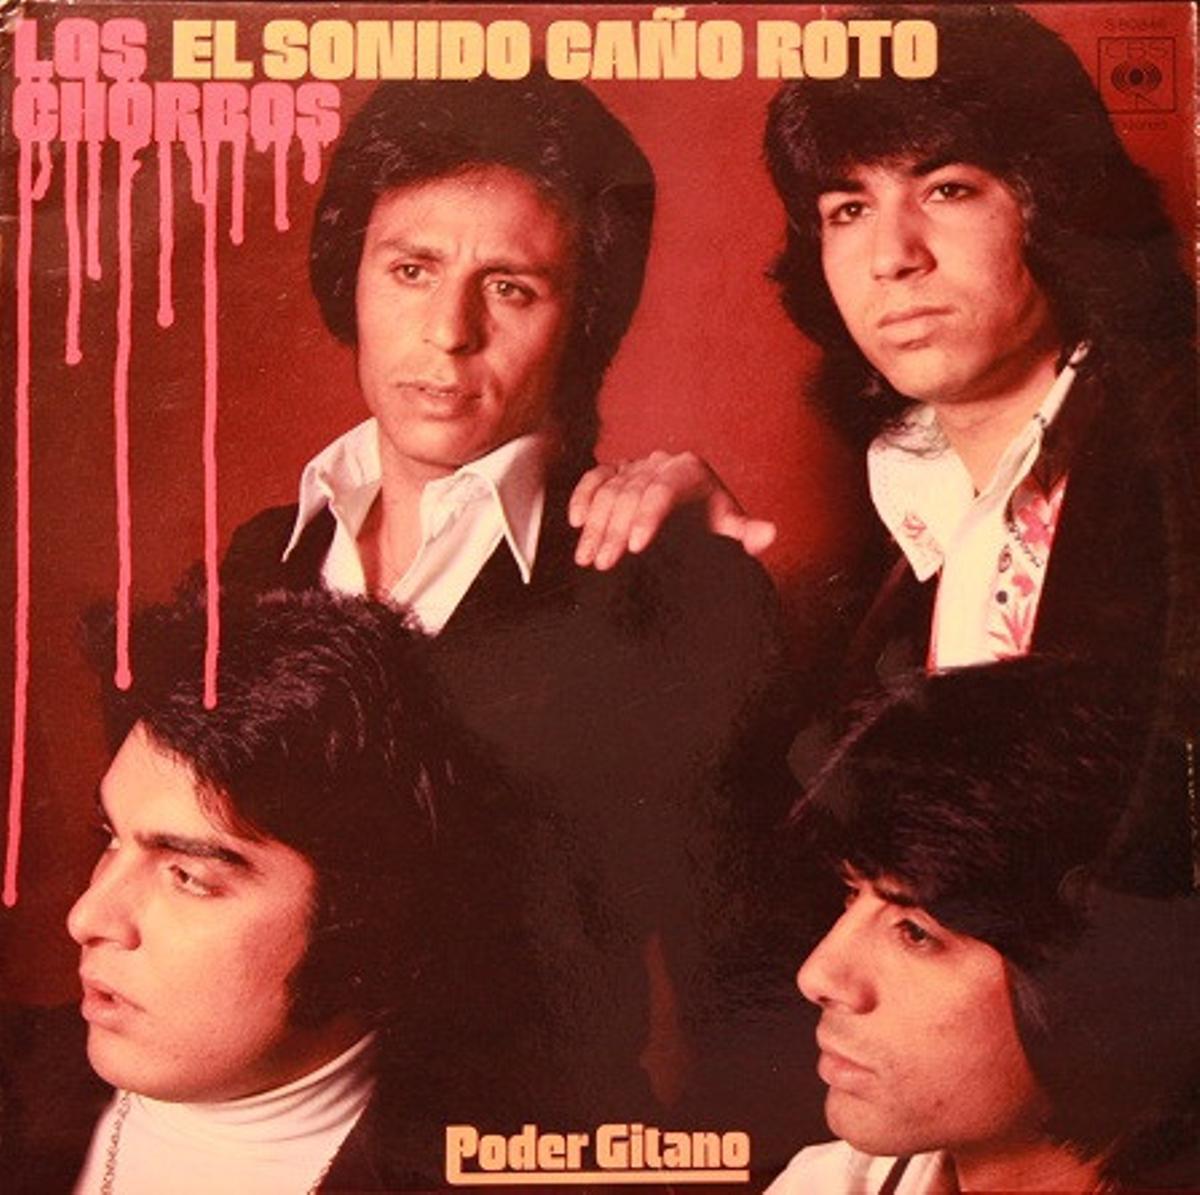 Poder Gitano, el disco de Los Chorbos con el eslogan Sonido Caño Roto